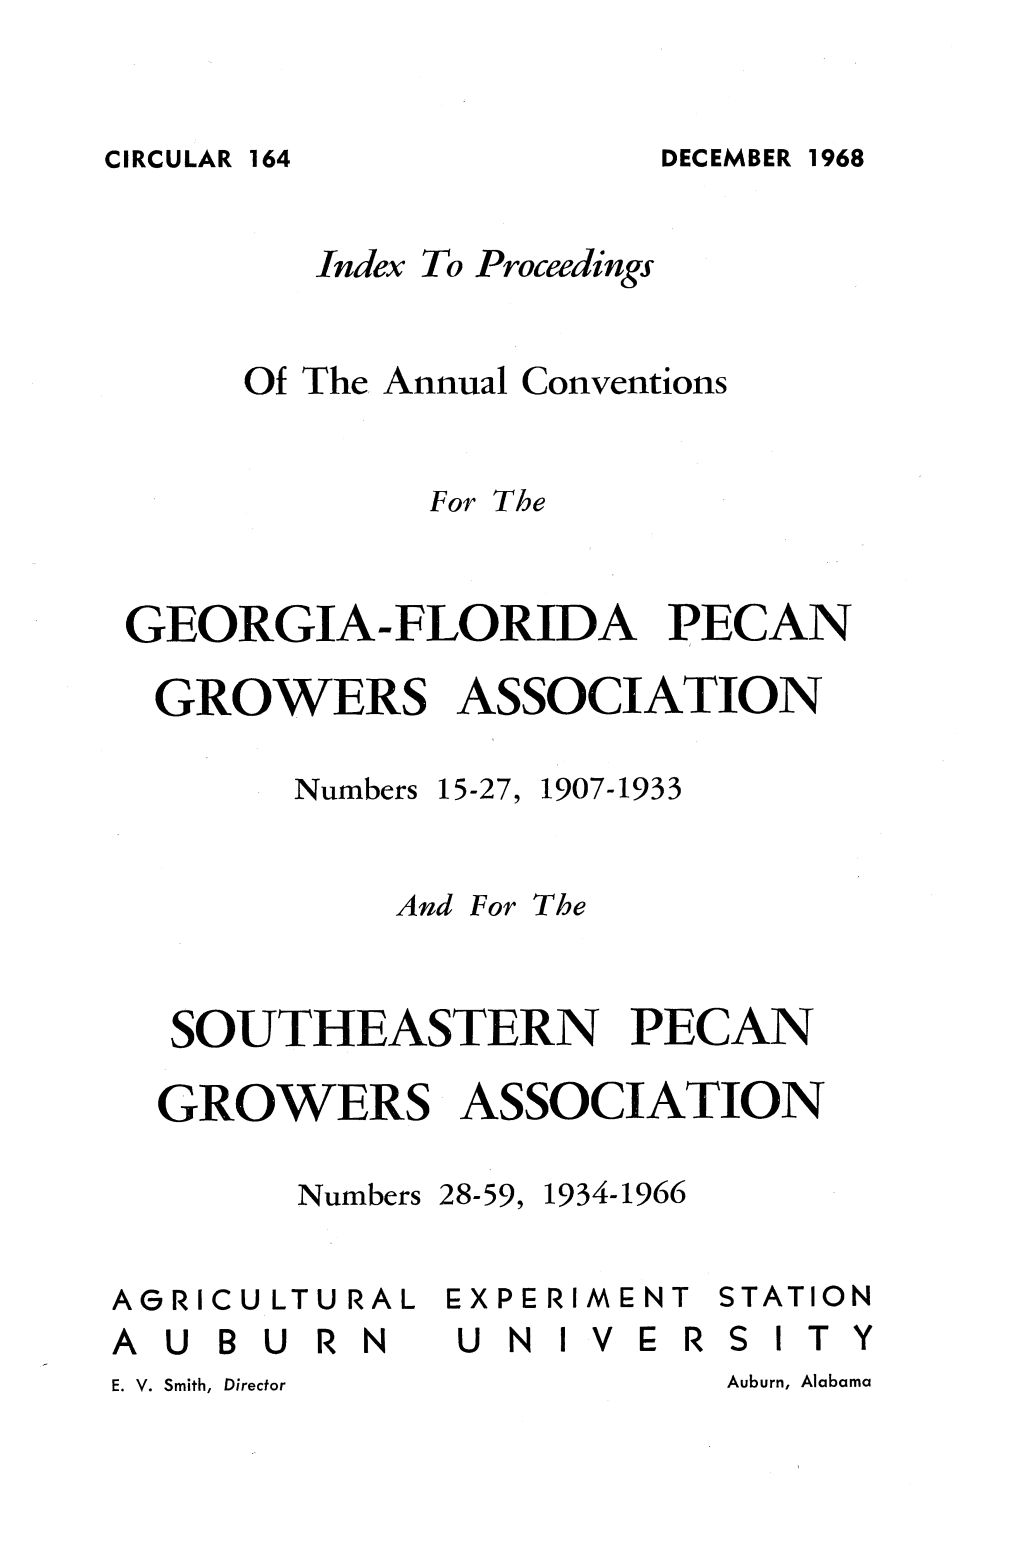 Georgia-Florida Pecan Growers Association